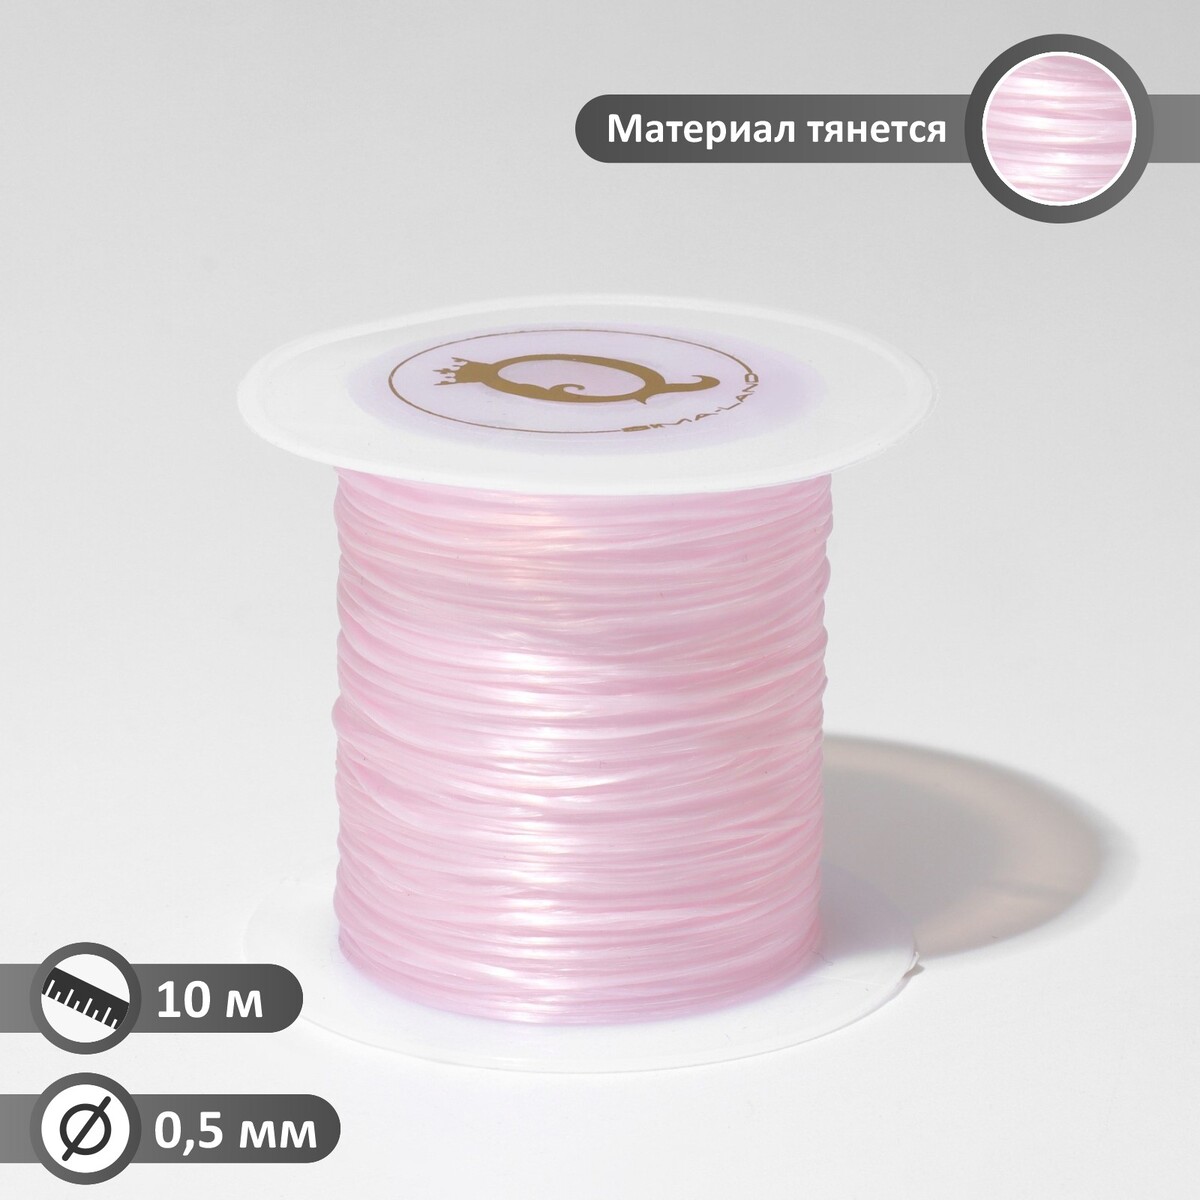 Нить силиконовая (резинка) d=0,5 мм, l=10 м (прочность 2250 денье), цвет светло-розовый нить силиконовая резинка d 0 5мм l 10м прочность 2250 денье светло розовый